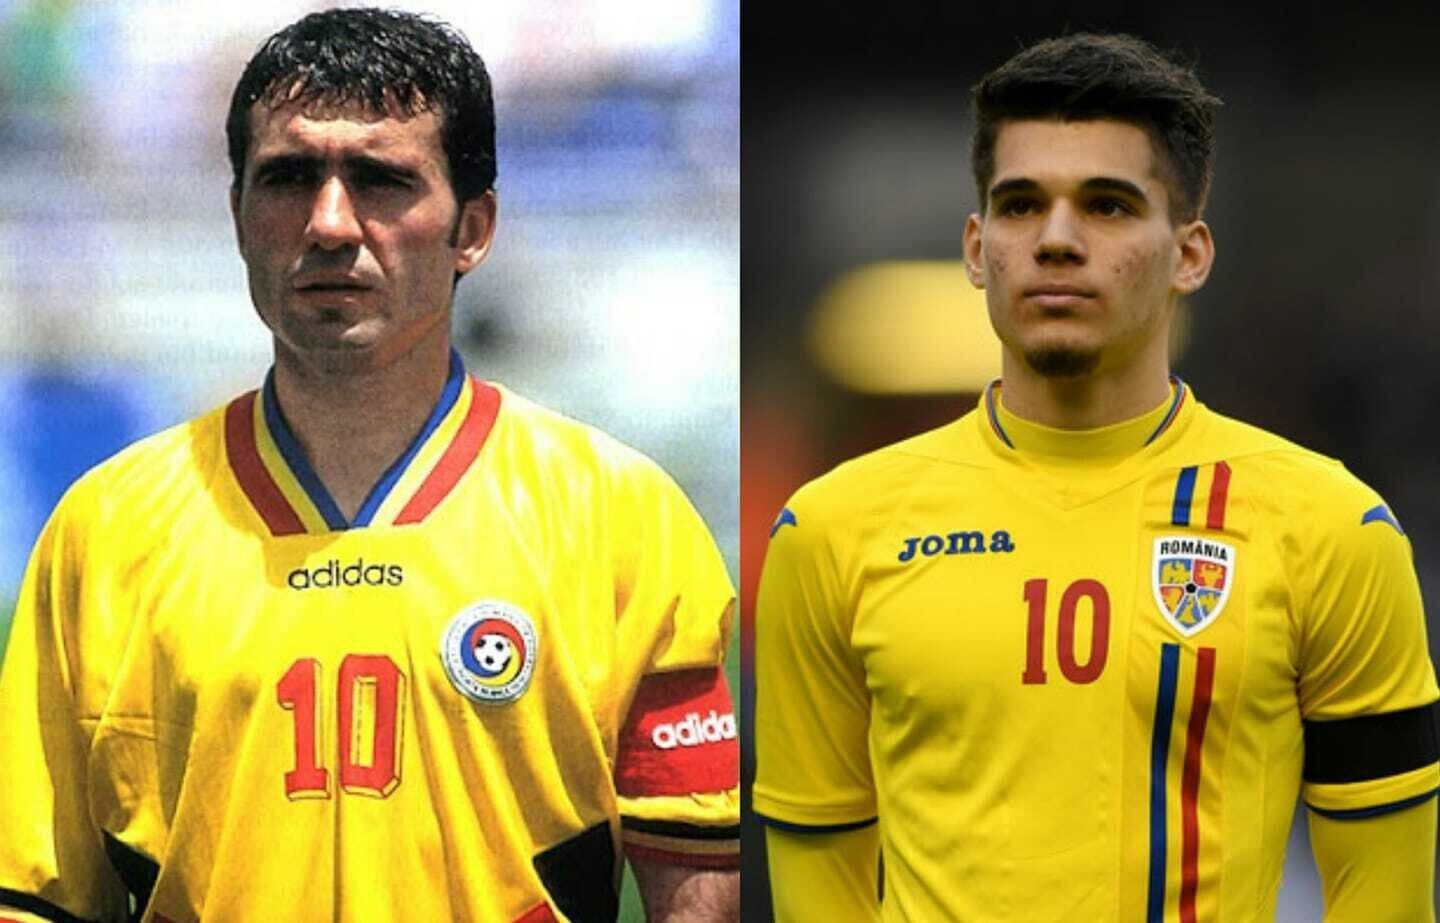 2 cha con nhà Hagi đều chơi cho đội tuyển Romania.